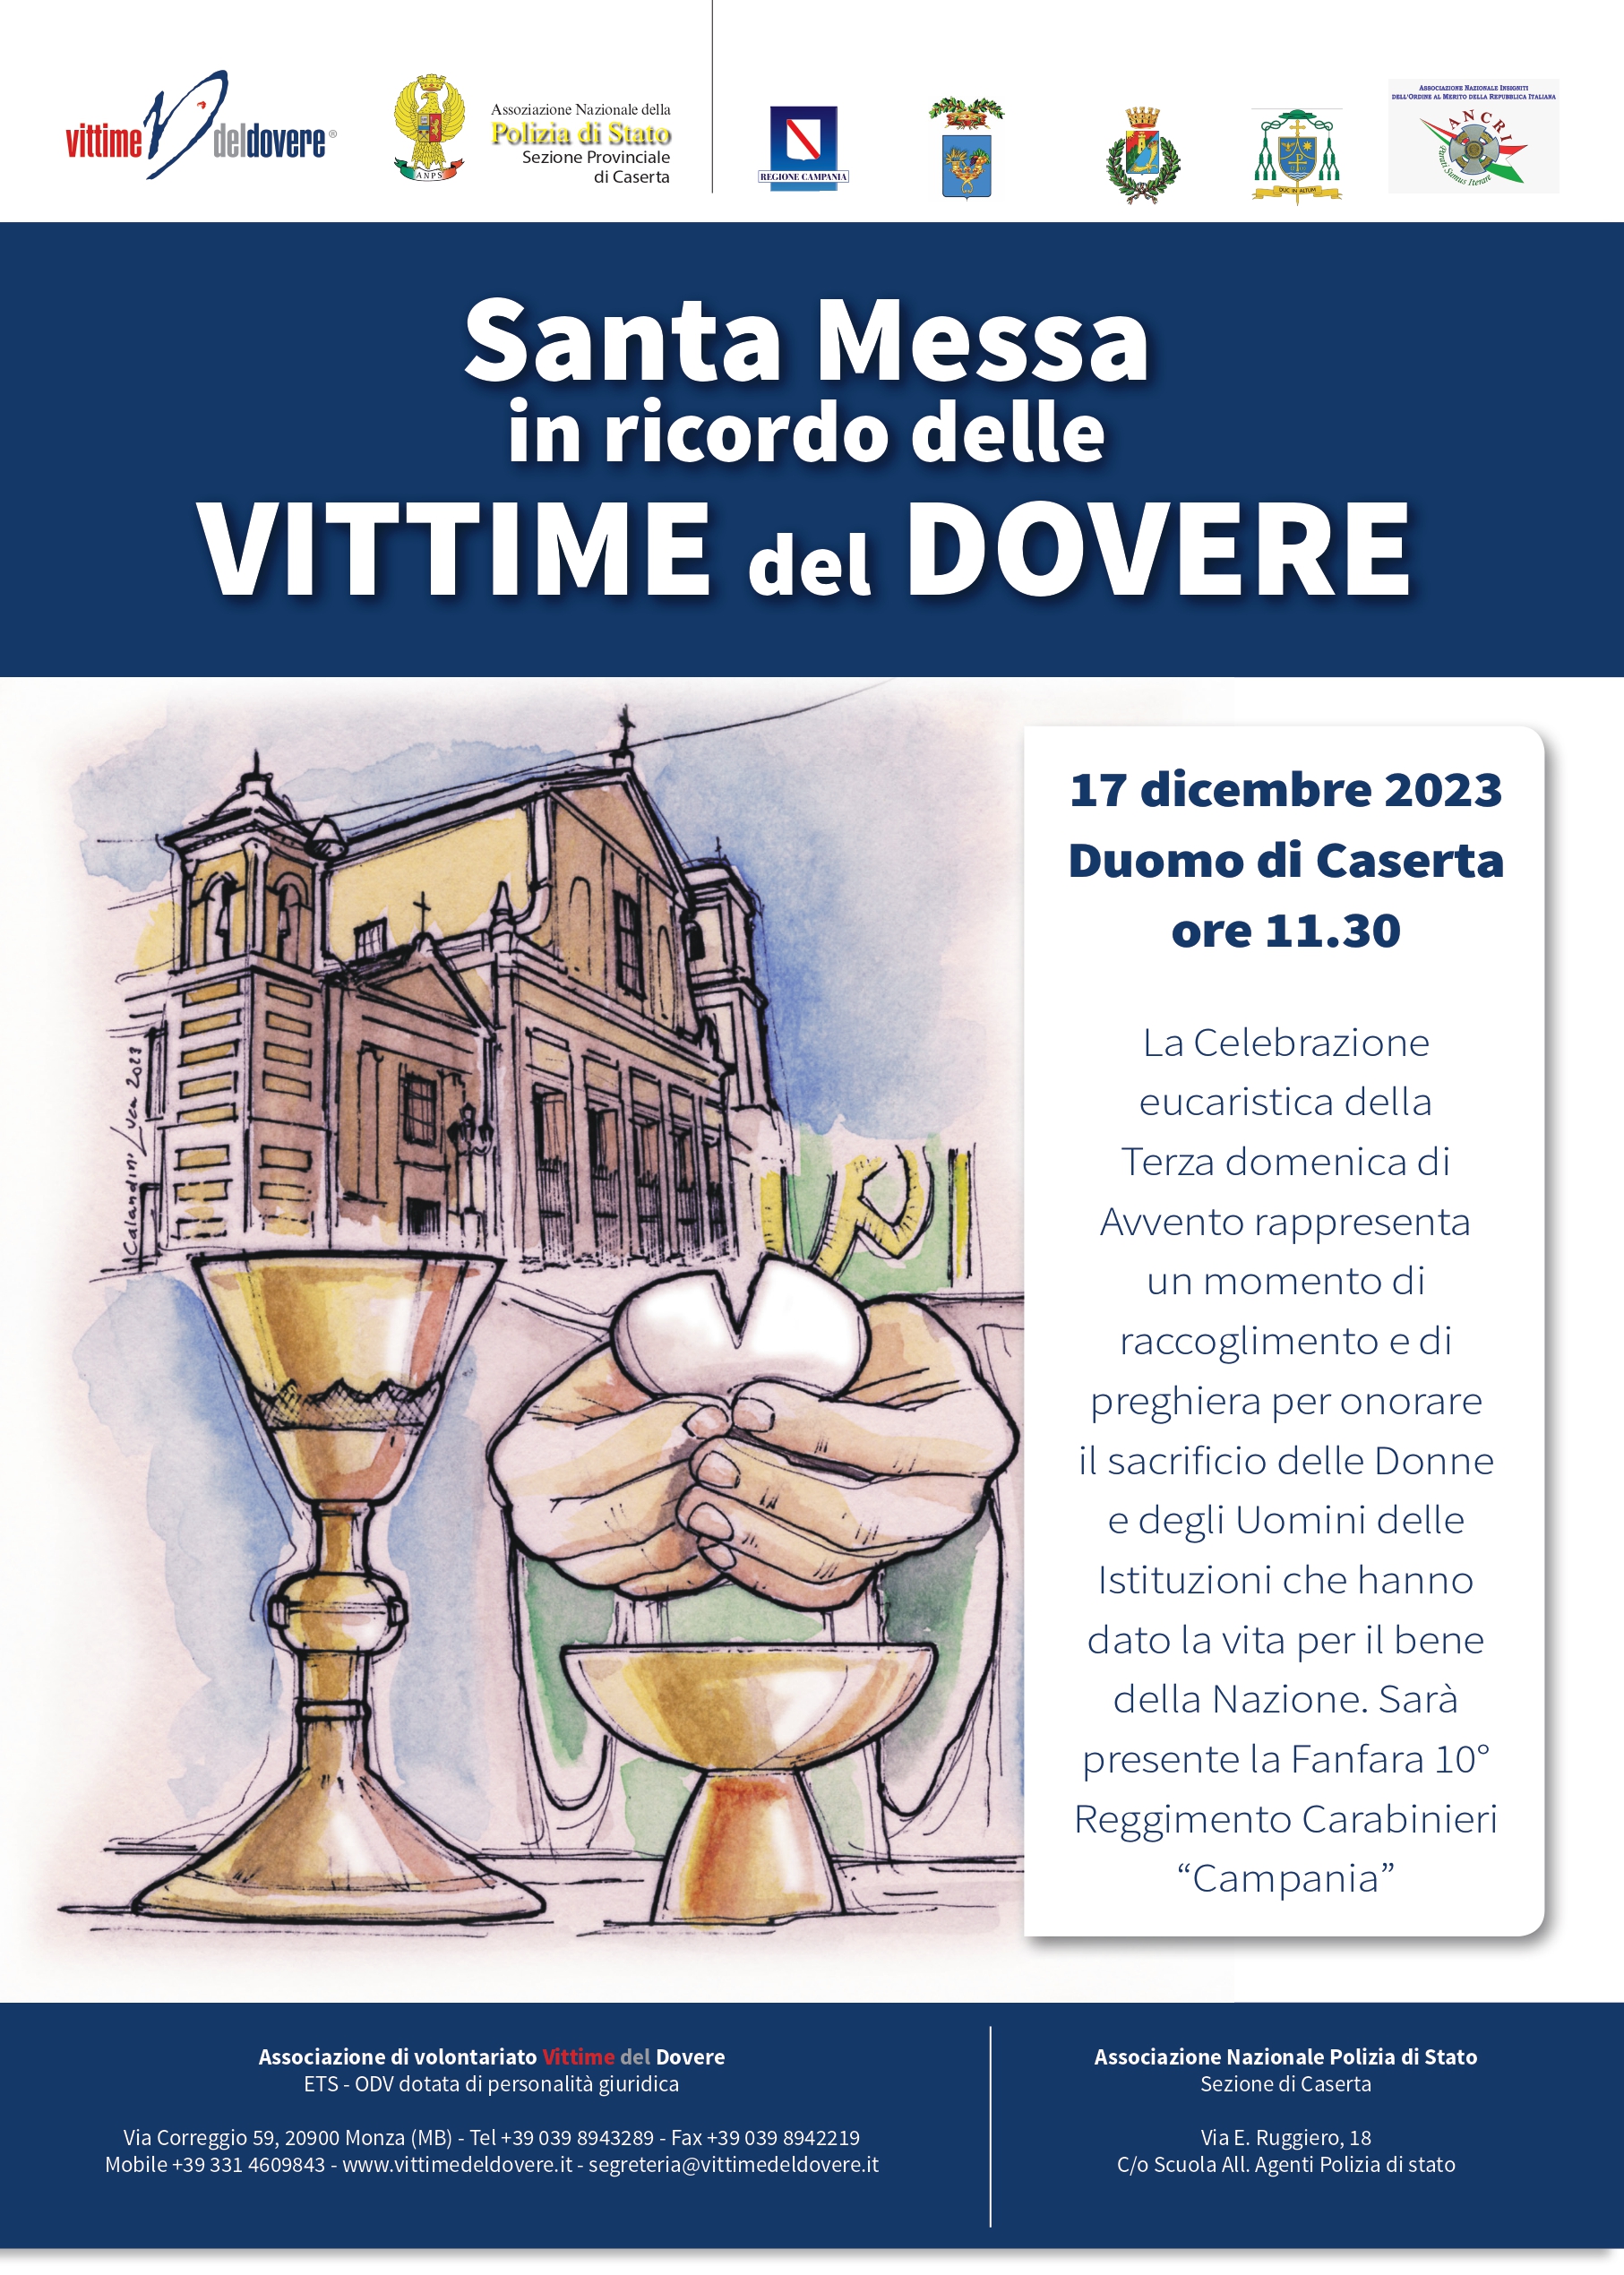 Caserta: Santa Messa in ricordo delle Vittime del Dovere al Duomo